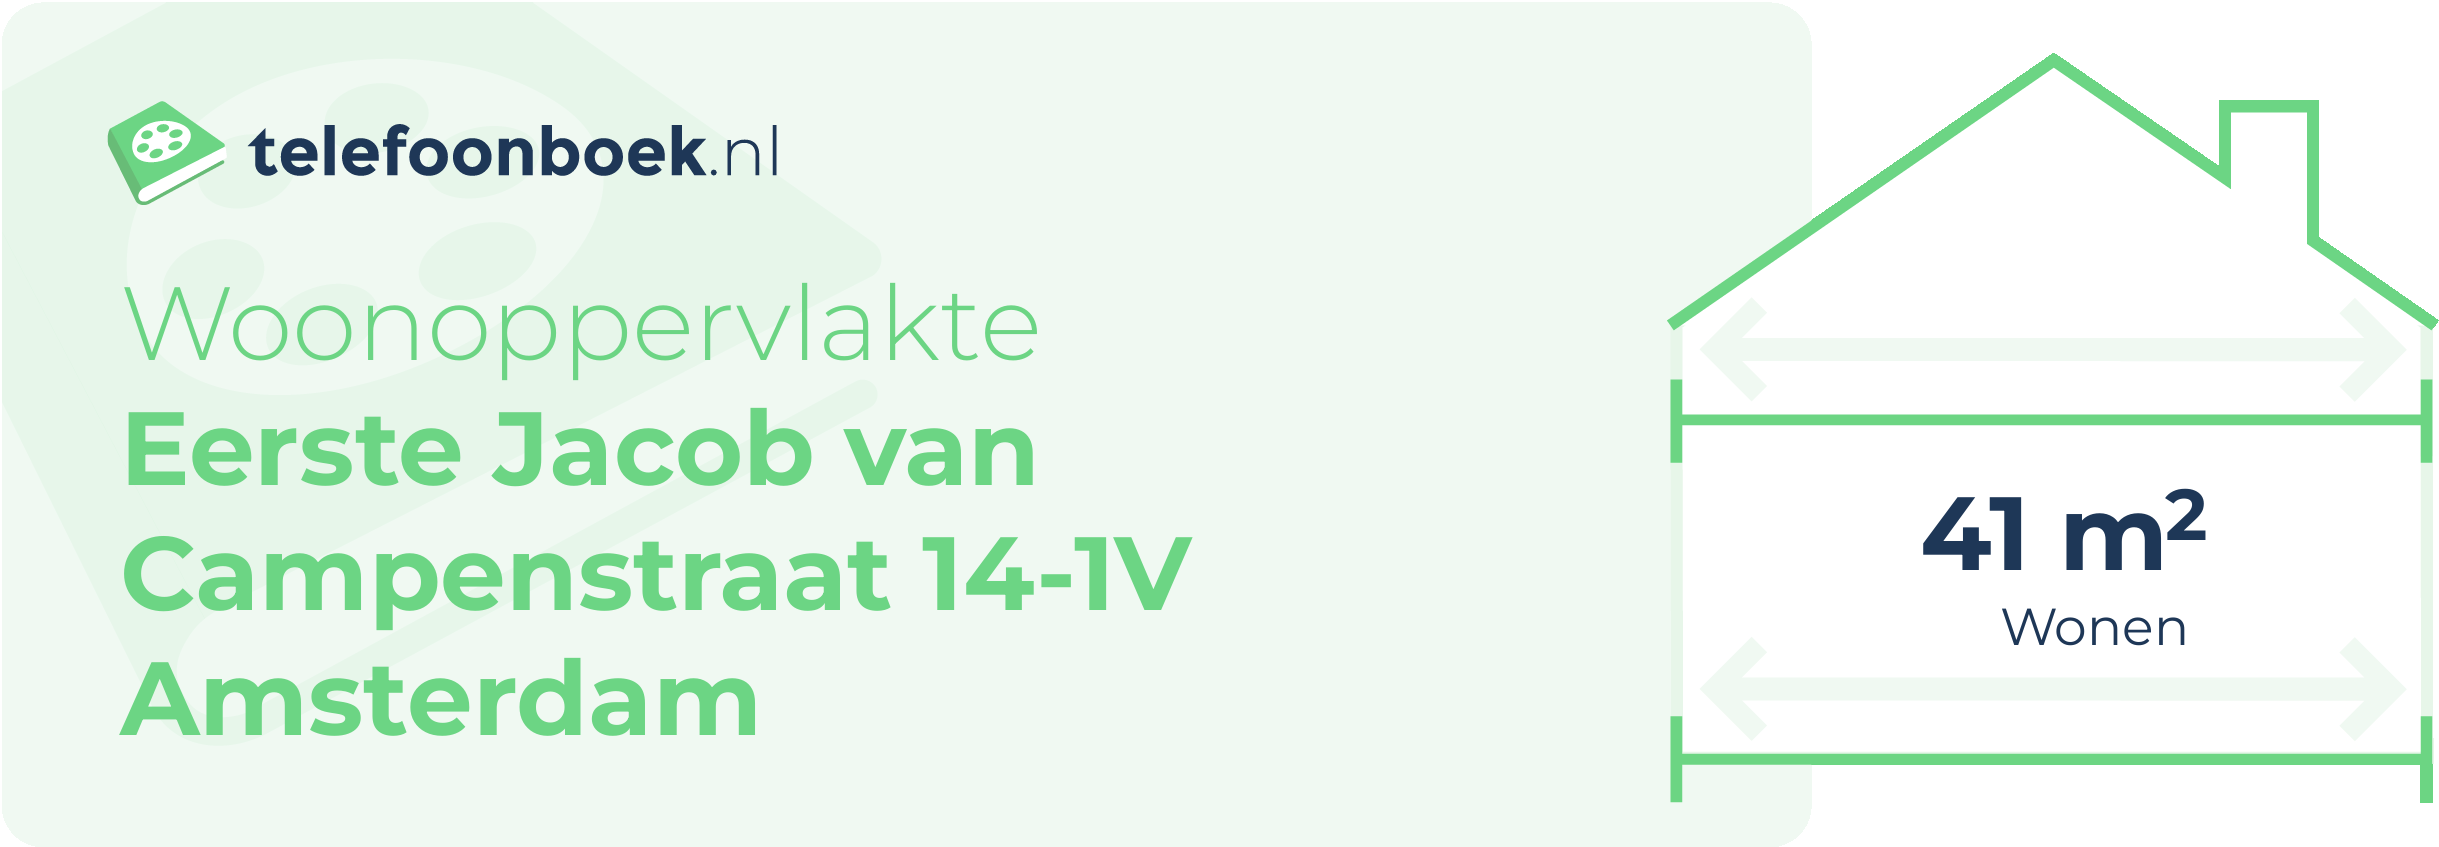 Woonoppervlakte Eerste Jacob Van Campenstraat 14-1V Amsterdam